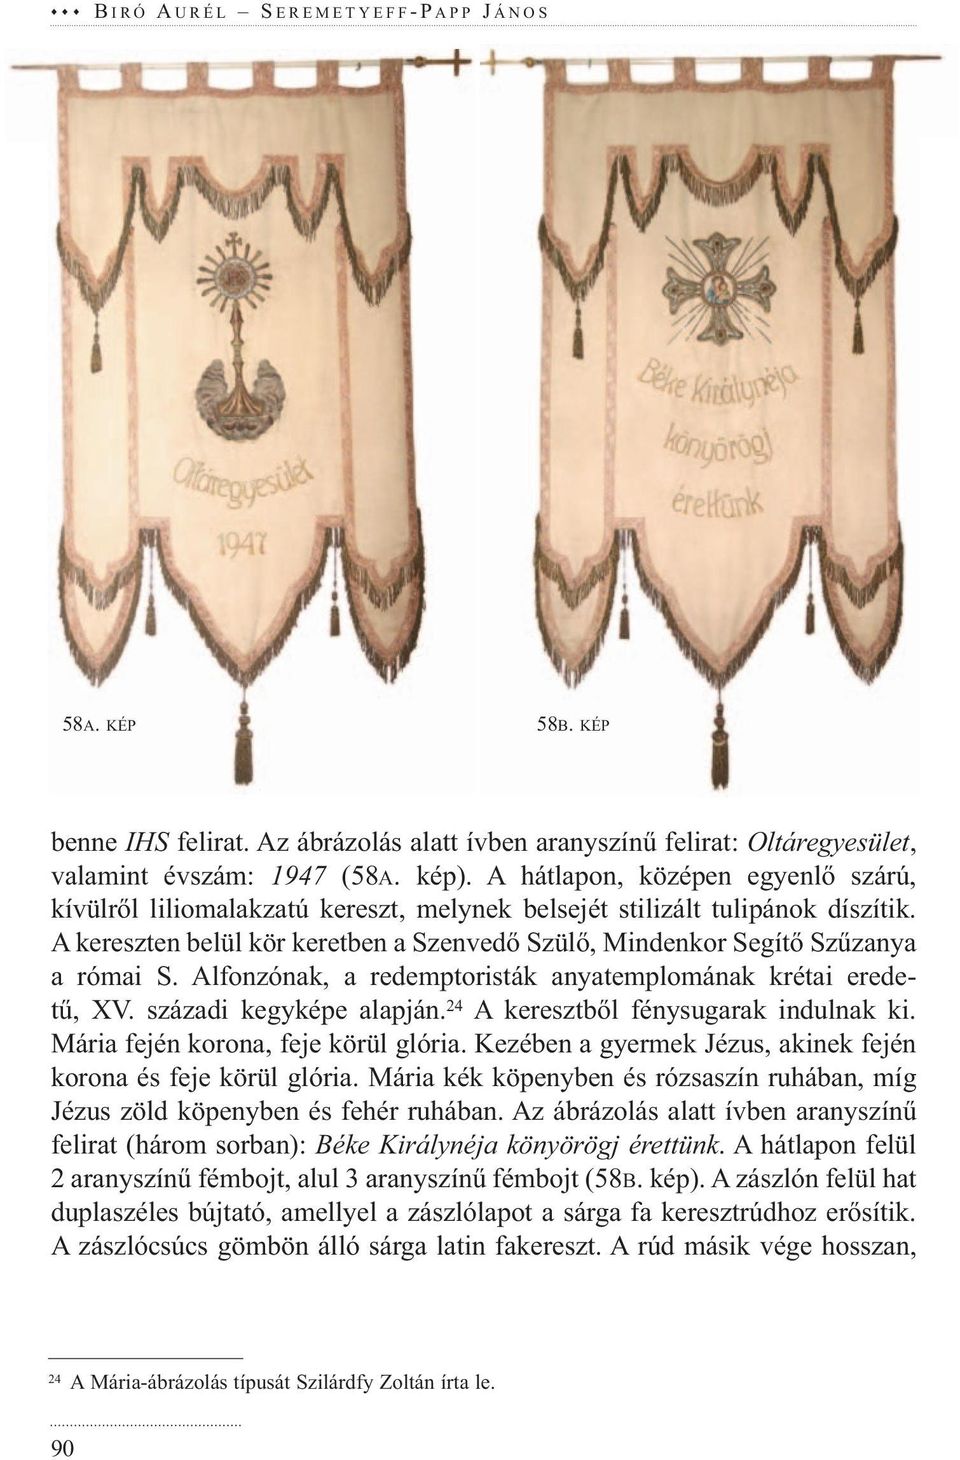 Alfonzónak, a redemptoristák anyatemplomának krétai eredetű, XV. századi kegyképe alapján. 24 A keresztből fénysugarak indulnak ki. Mária fején korona, feje körül glória.